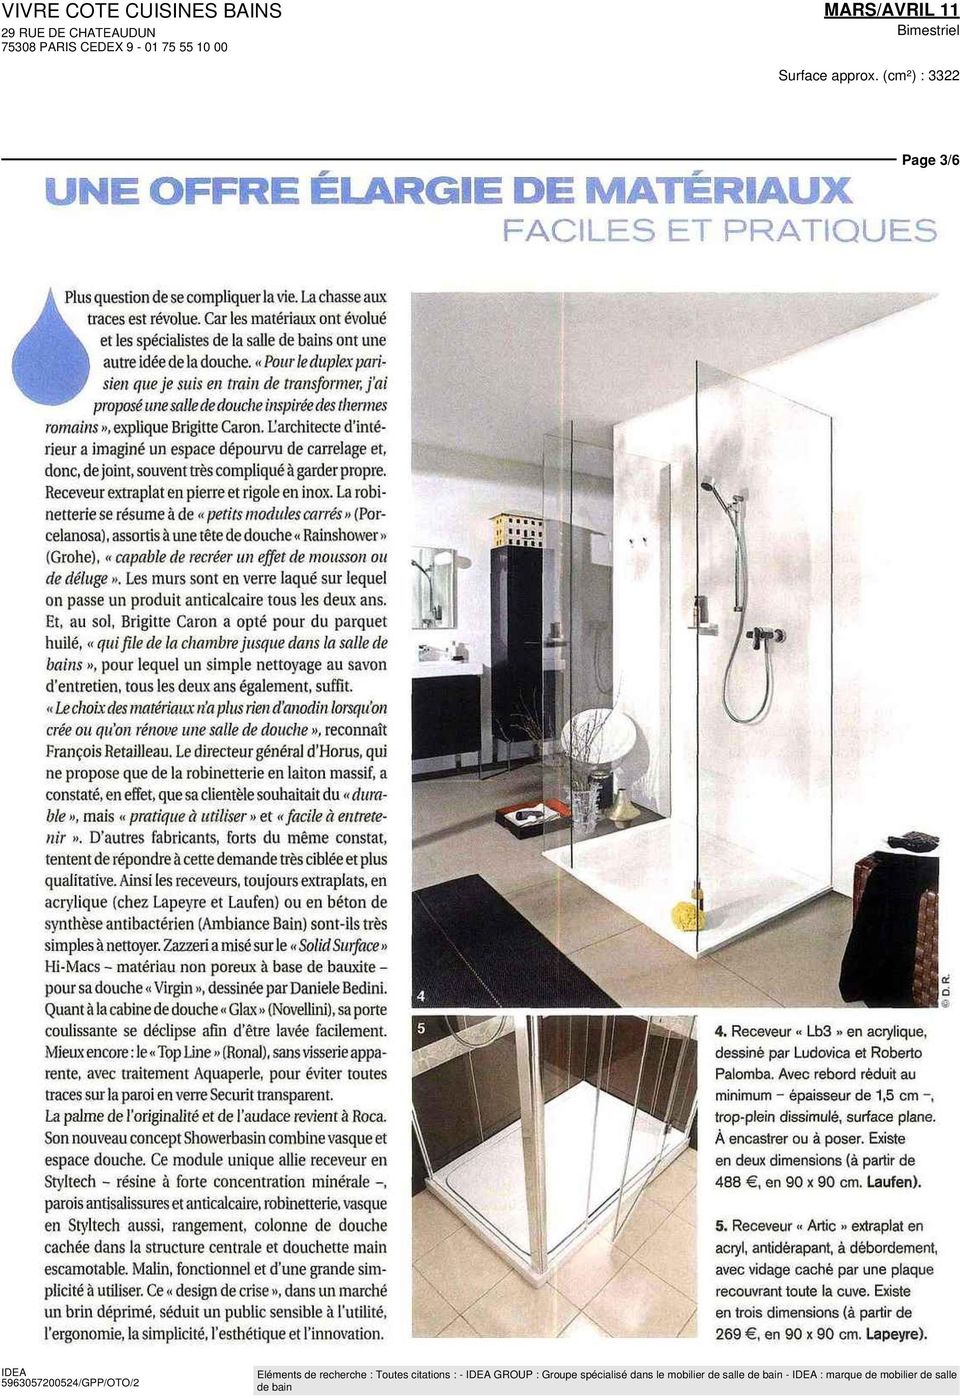 «Pour le duplex parisien que je suis en train de transformer, j'ai proposé une salle de douche inspirée des thermes romains», explique Brigitte Caron.